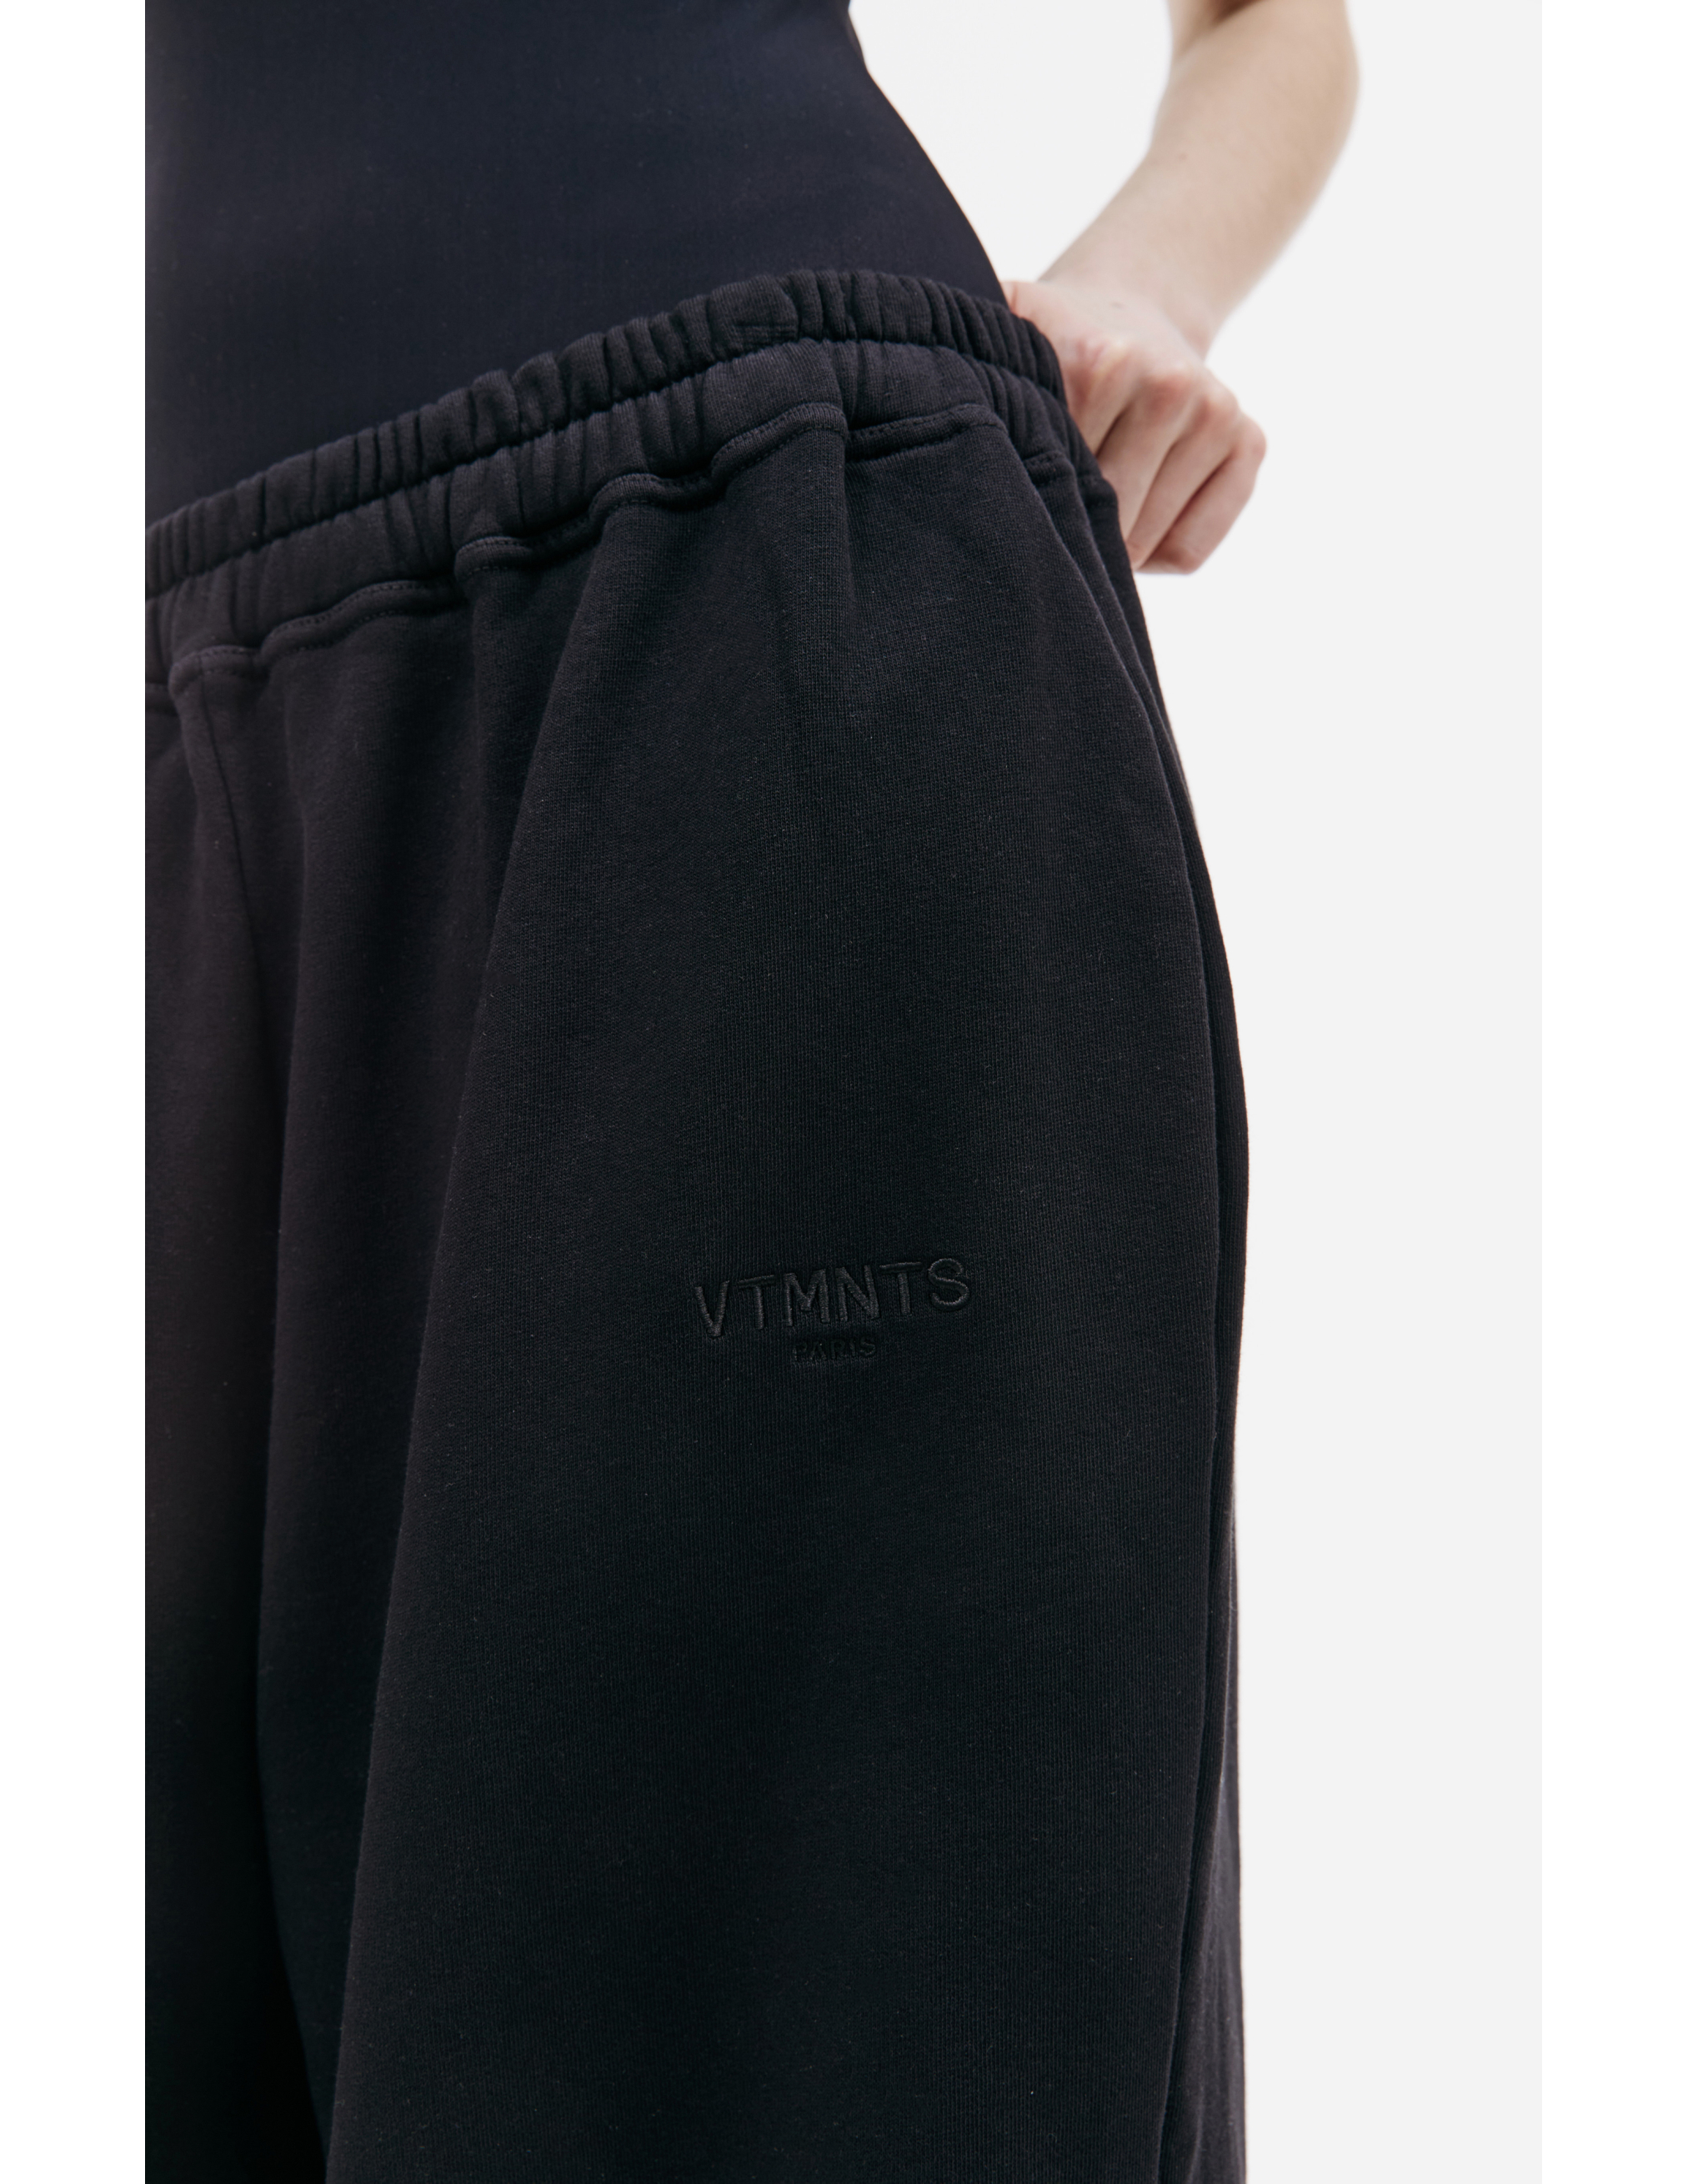 Широкие брюки с вышитым логотипом VTMNTS VL20SP100B/1600, размер L;XL VL20SP100B/1600 - фото 5